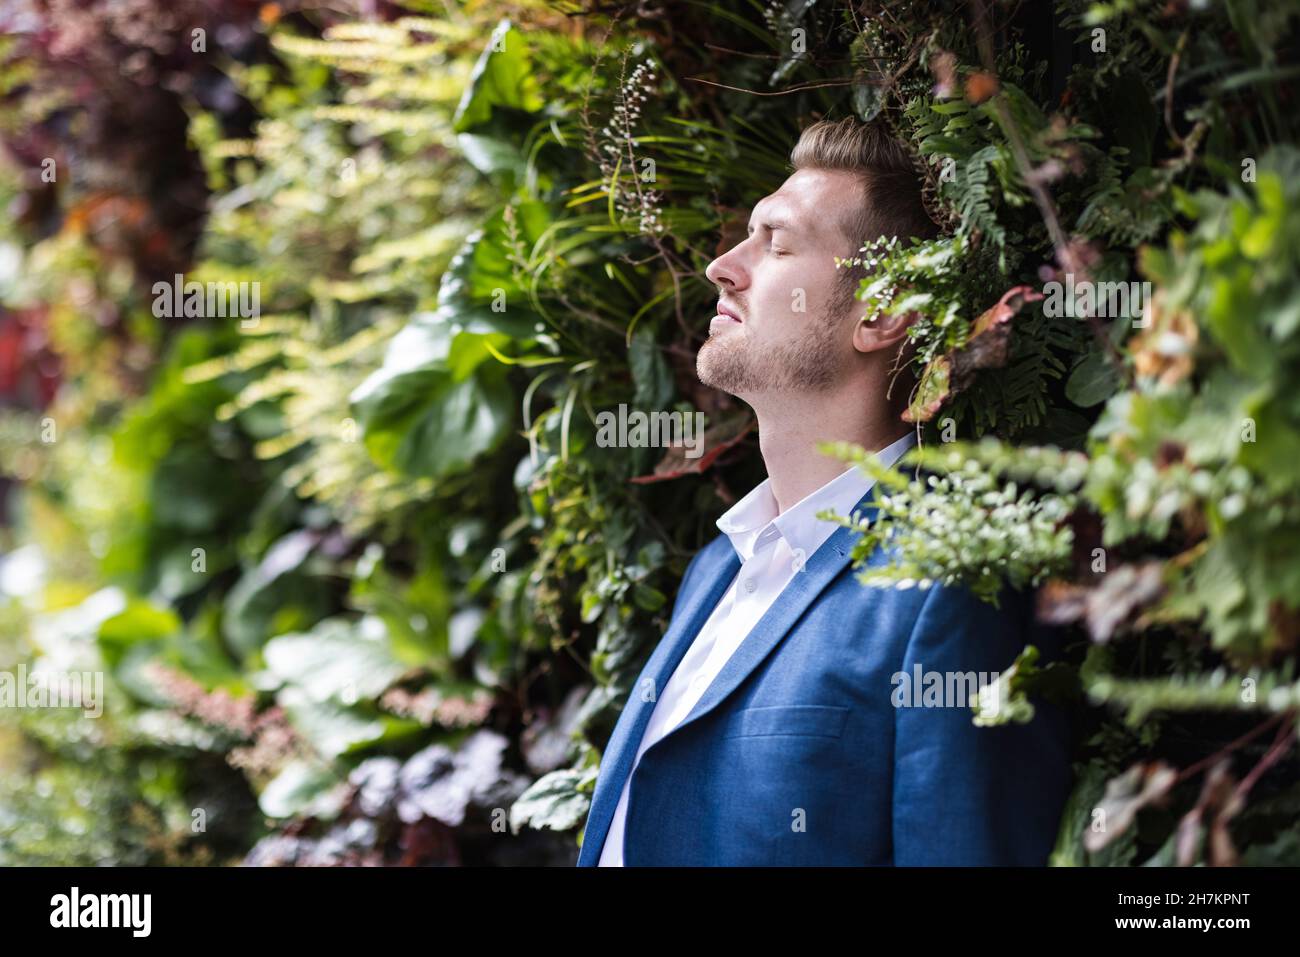 Männlicher Profi mit geschlossenen Augen, der sich auf grüne Pflanzen stützt Stockfoto